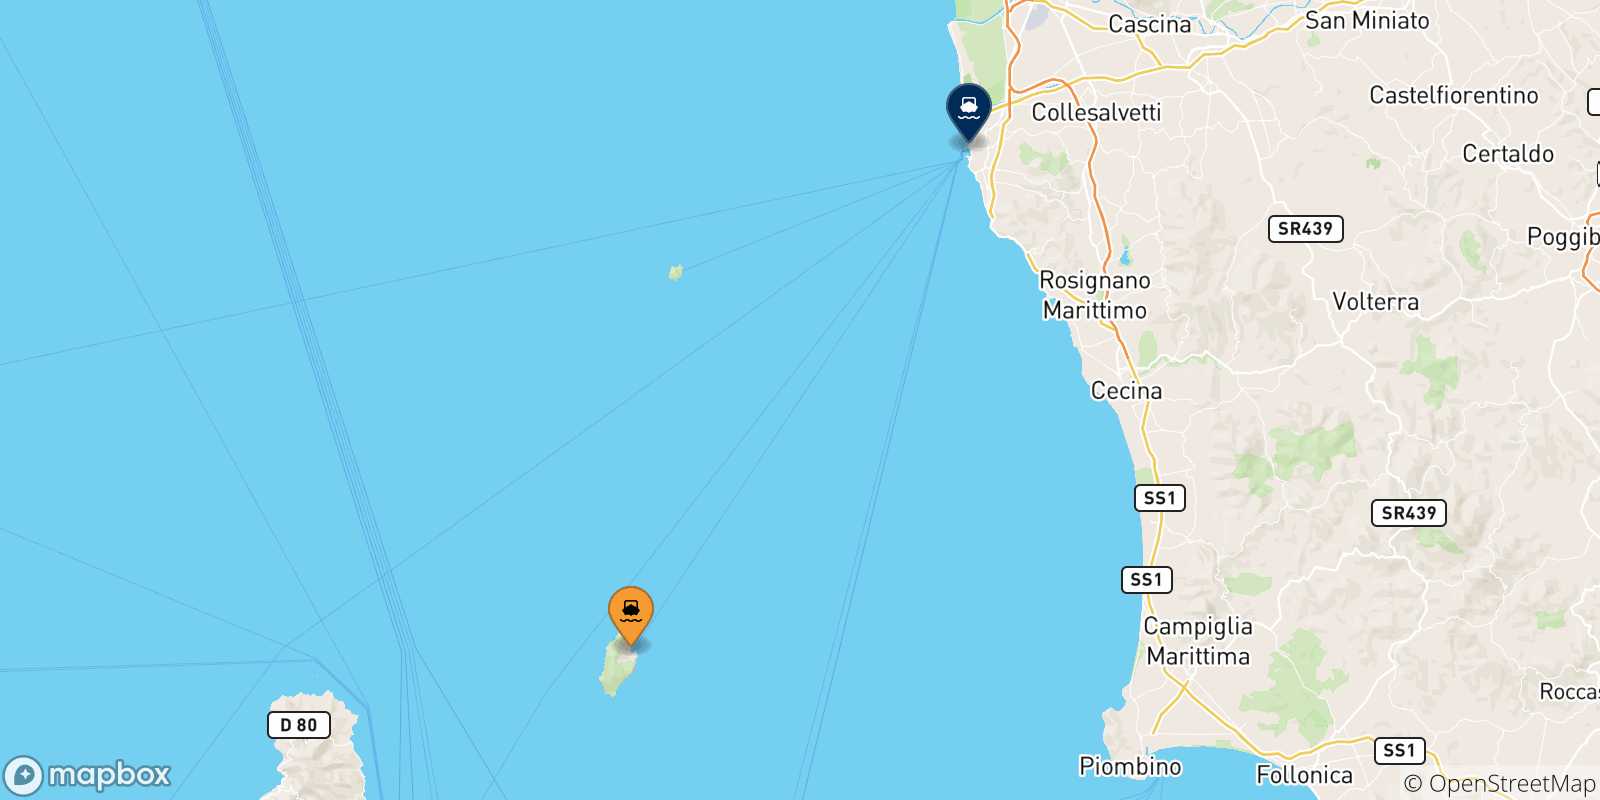 Mappa delle possibili rotte tra Capraia e l'Italia